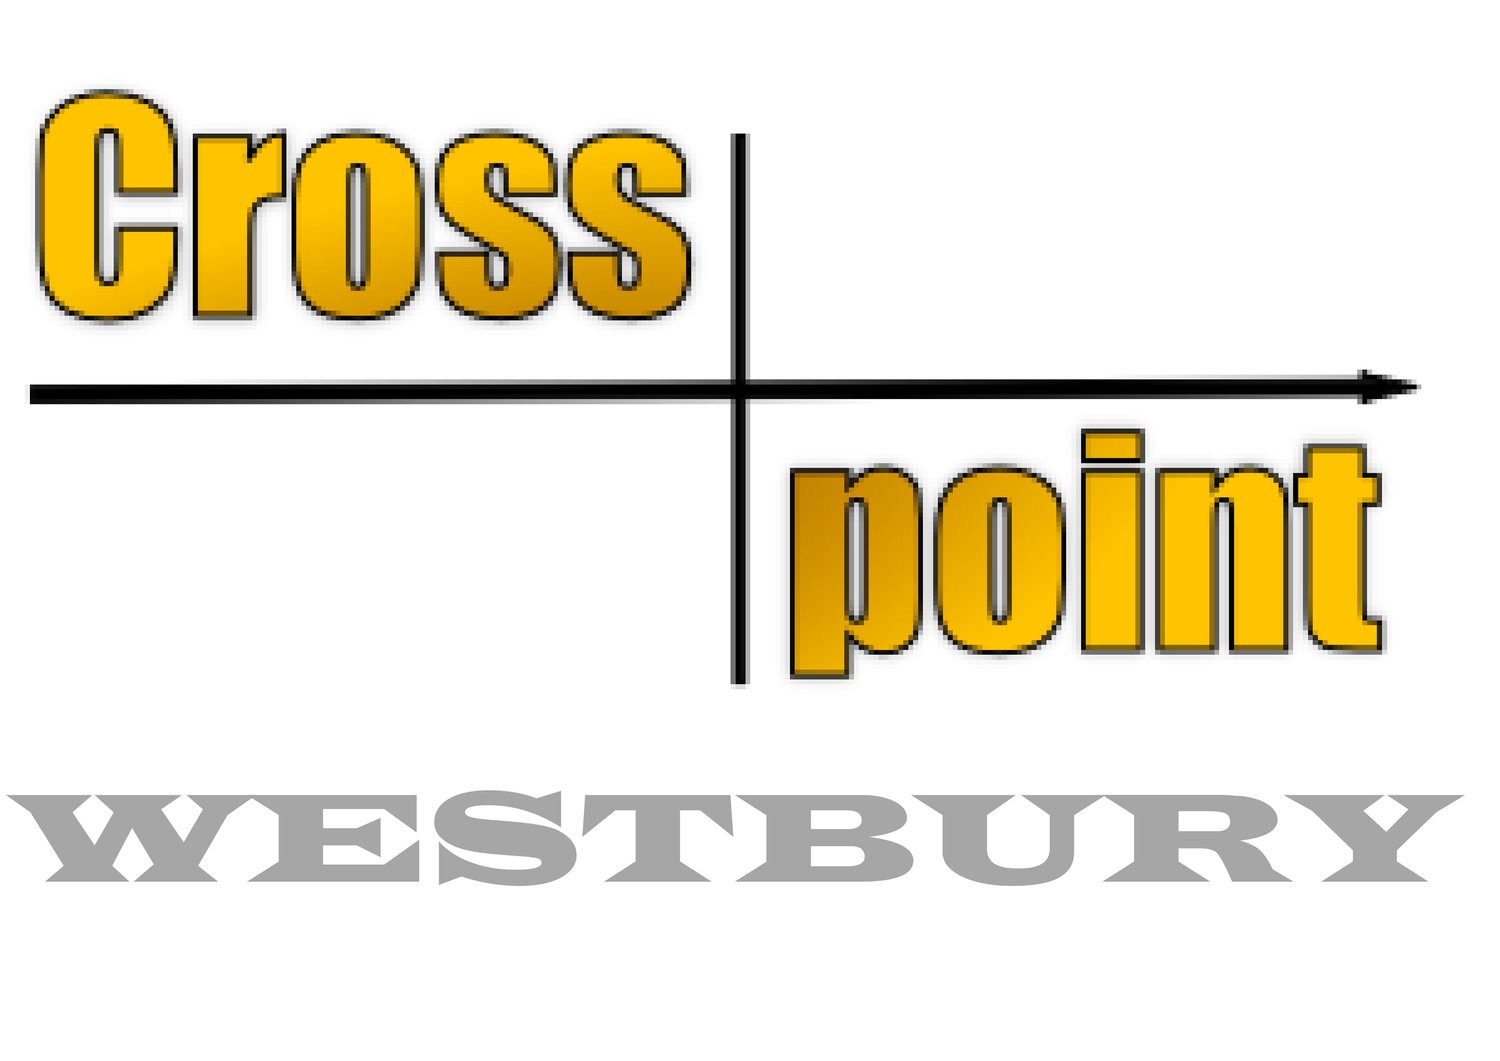 Crosspoint Westbury